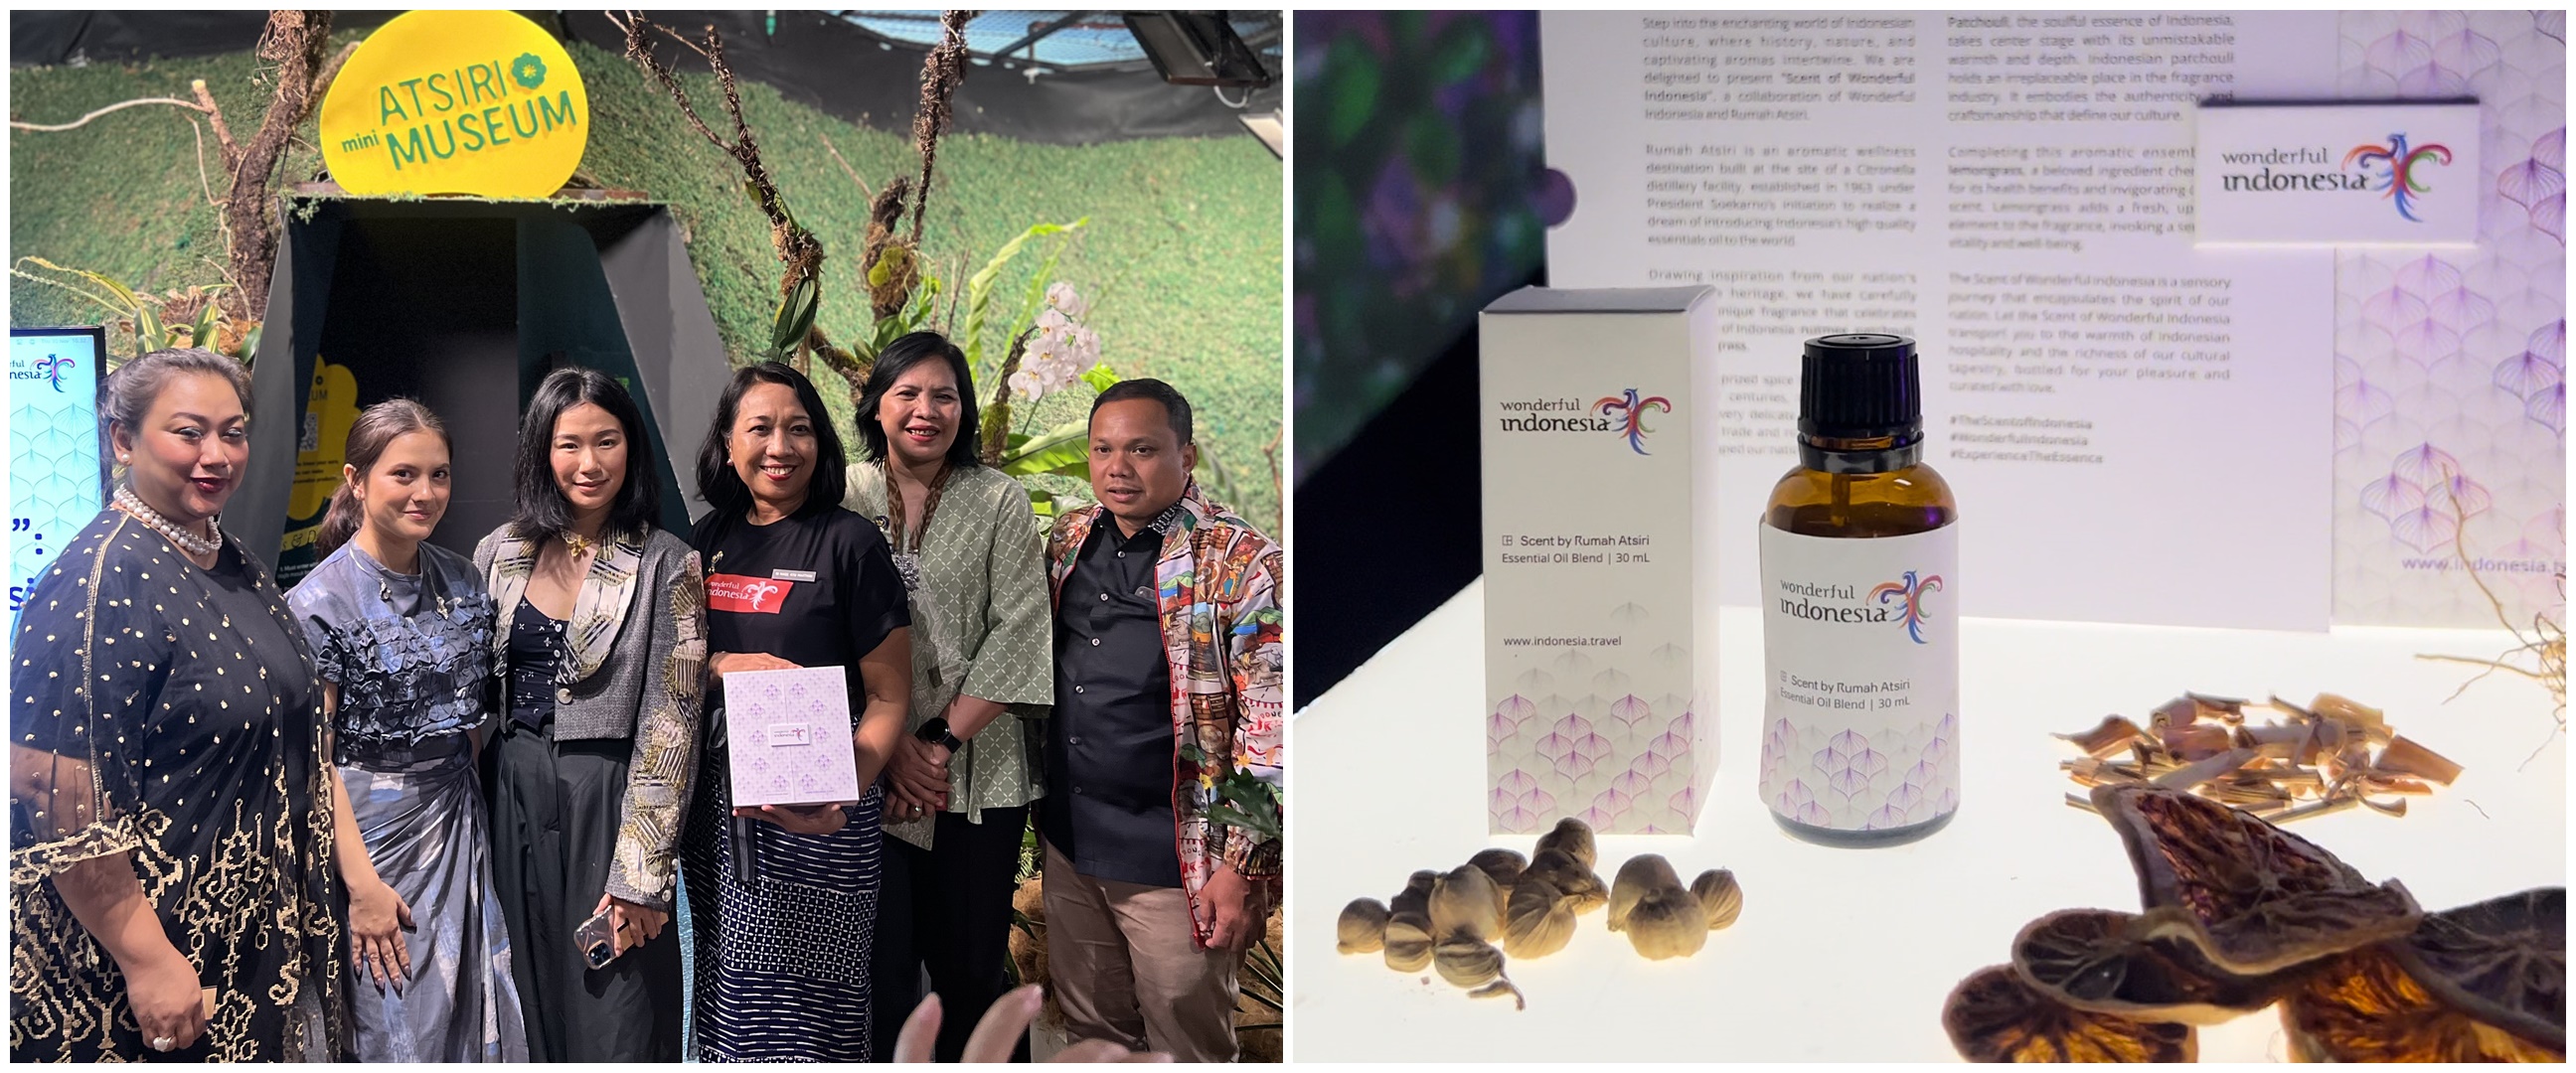 Kemenparekraf & Rumah Atsiri Indonesia rilis “Scent of Wonderful Indonesia”, ungkap wangi khas Nusanta